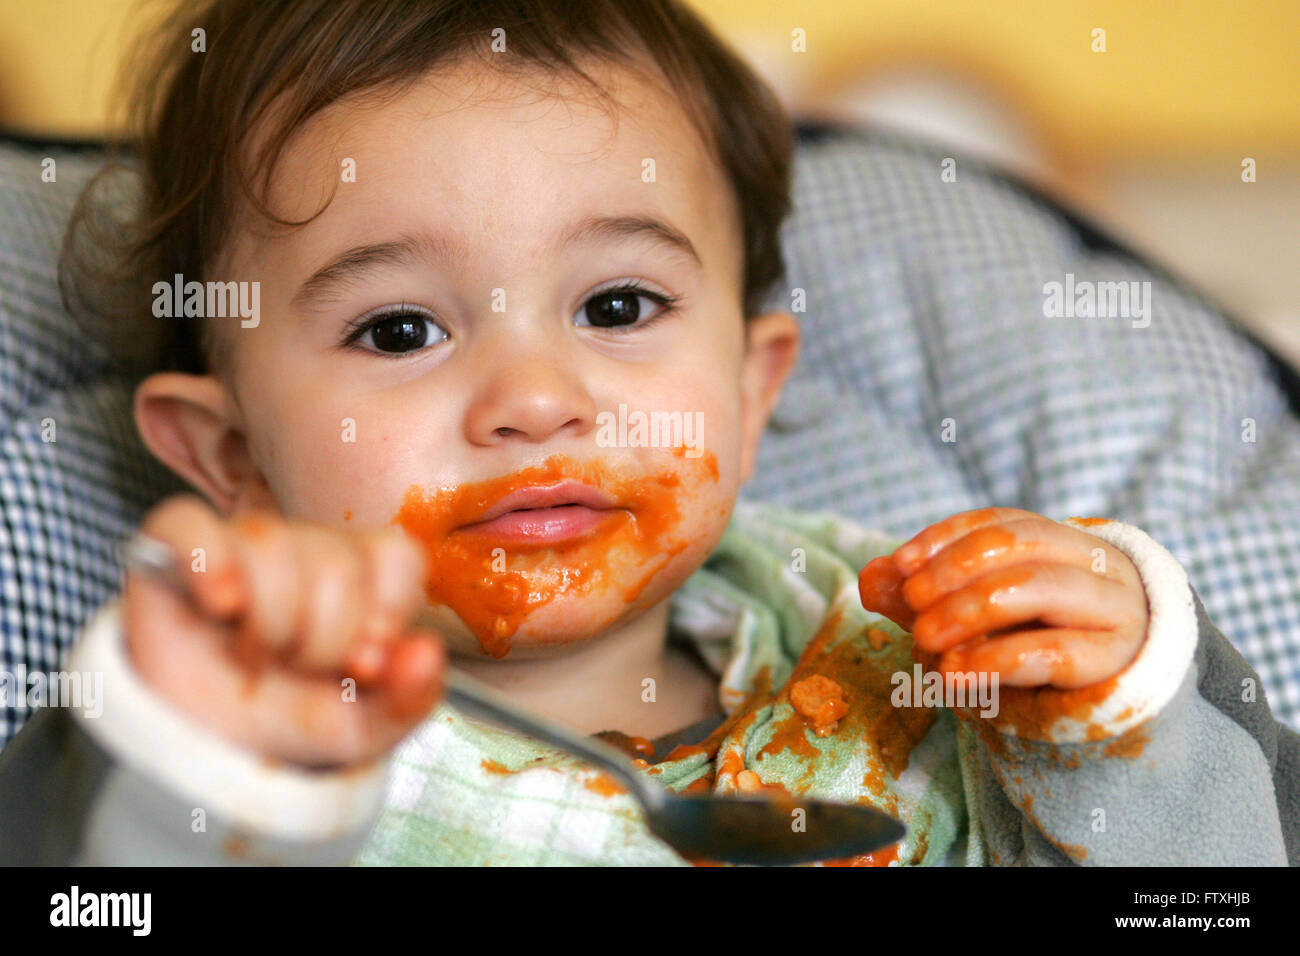 toddler enjoying feeding himself  Pic Peter Devlin Stock Photo